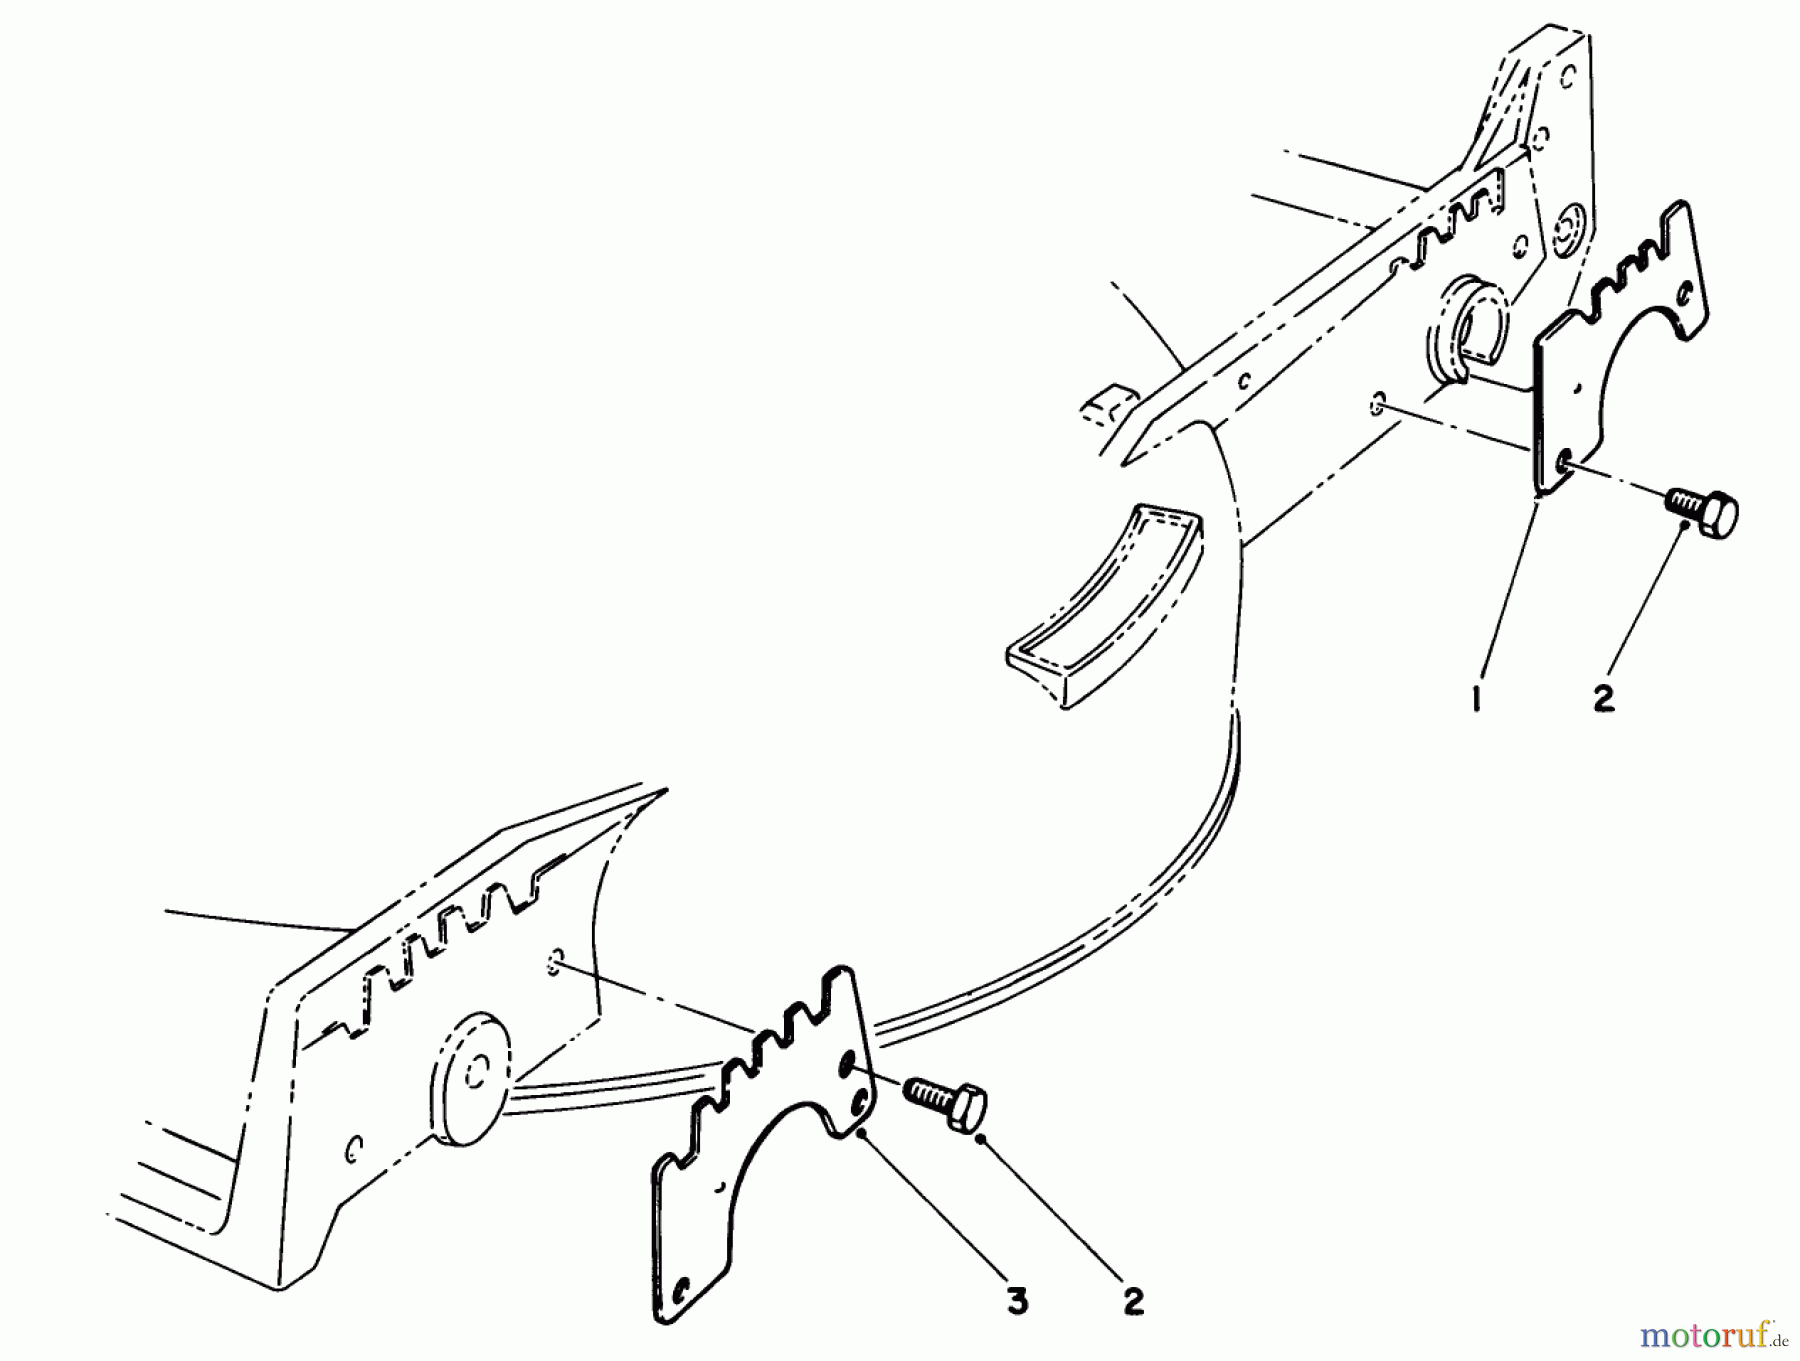  Toro Neu Mowers, Walk-Behind Seite 1 20675 - Toro Lawnmower, 1984 (4000001-4999999) WEAR PLATE KIT NO. 49-4080 (OPTIONAL)